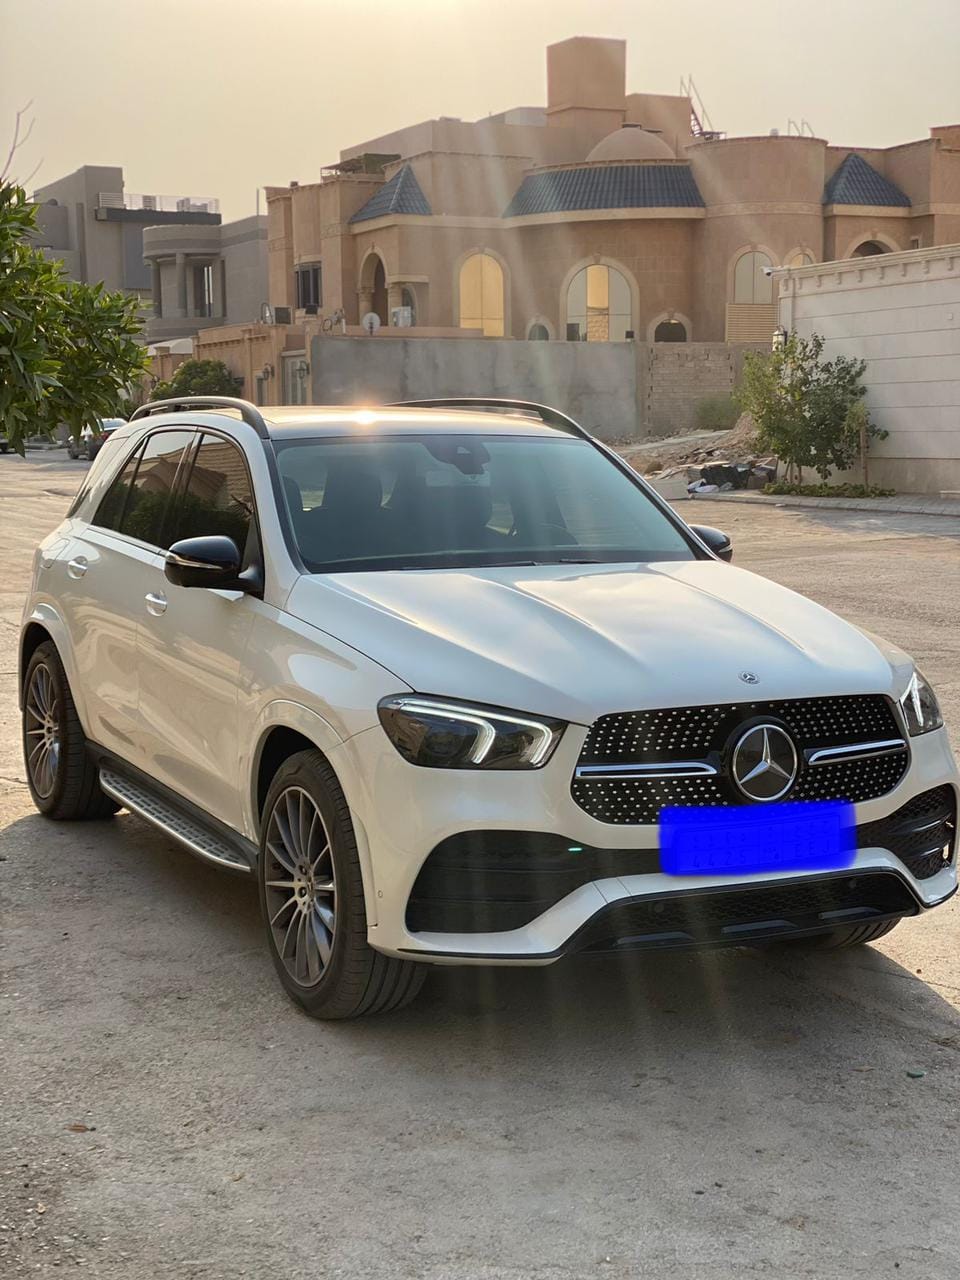 للبيع سيارة مرسيدس GLE موديل 2019 فى الرياض السعودية